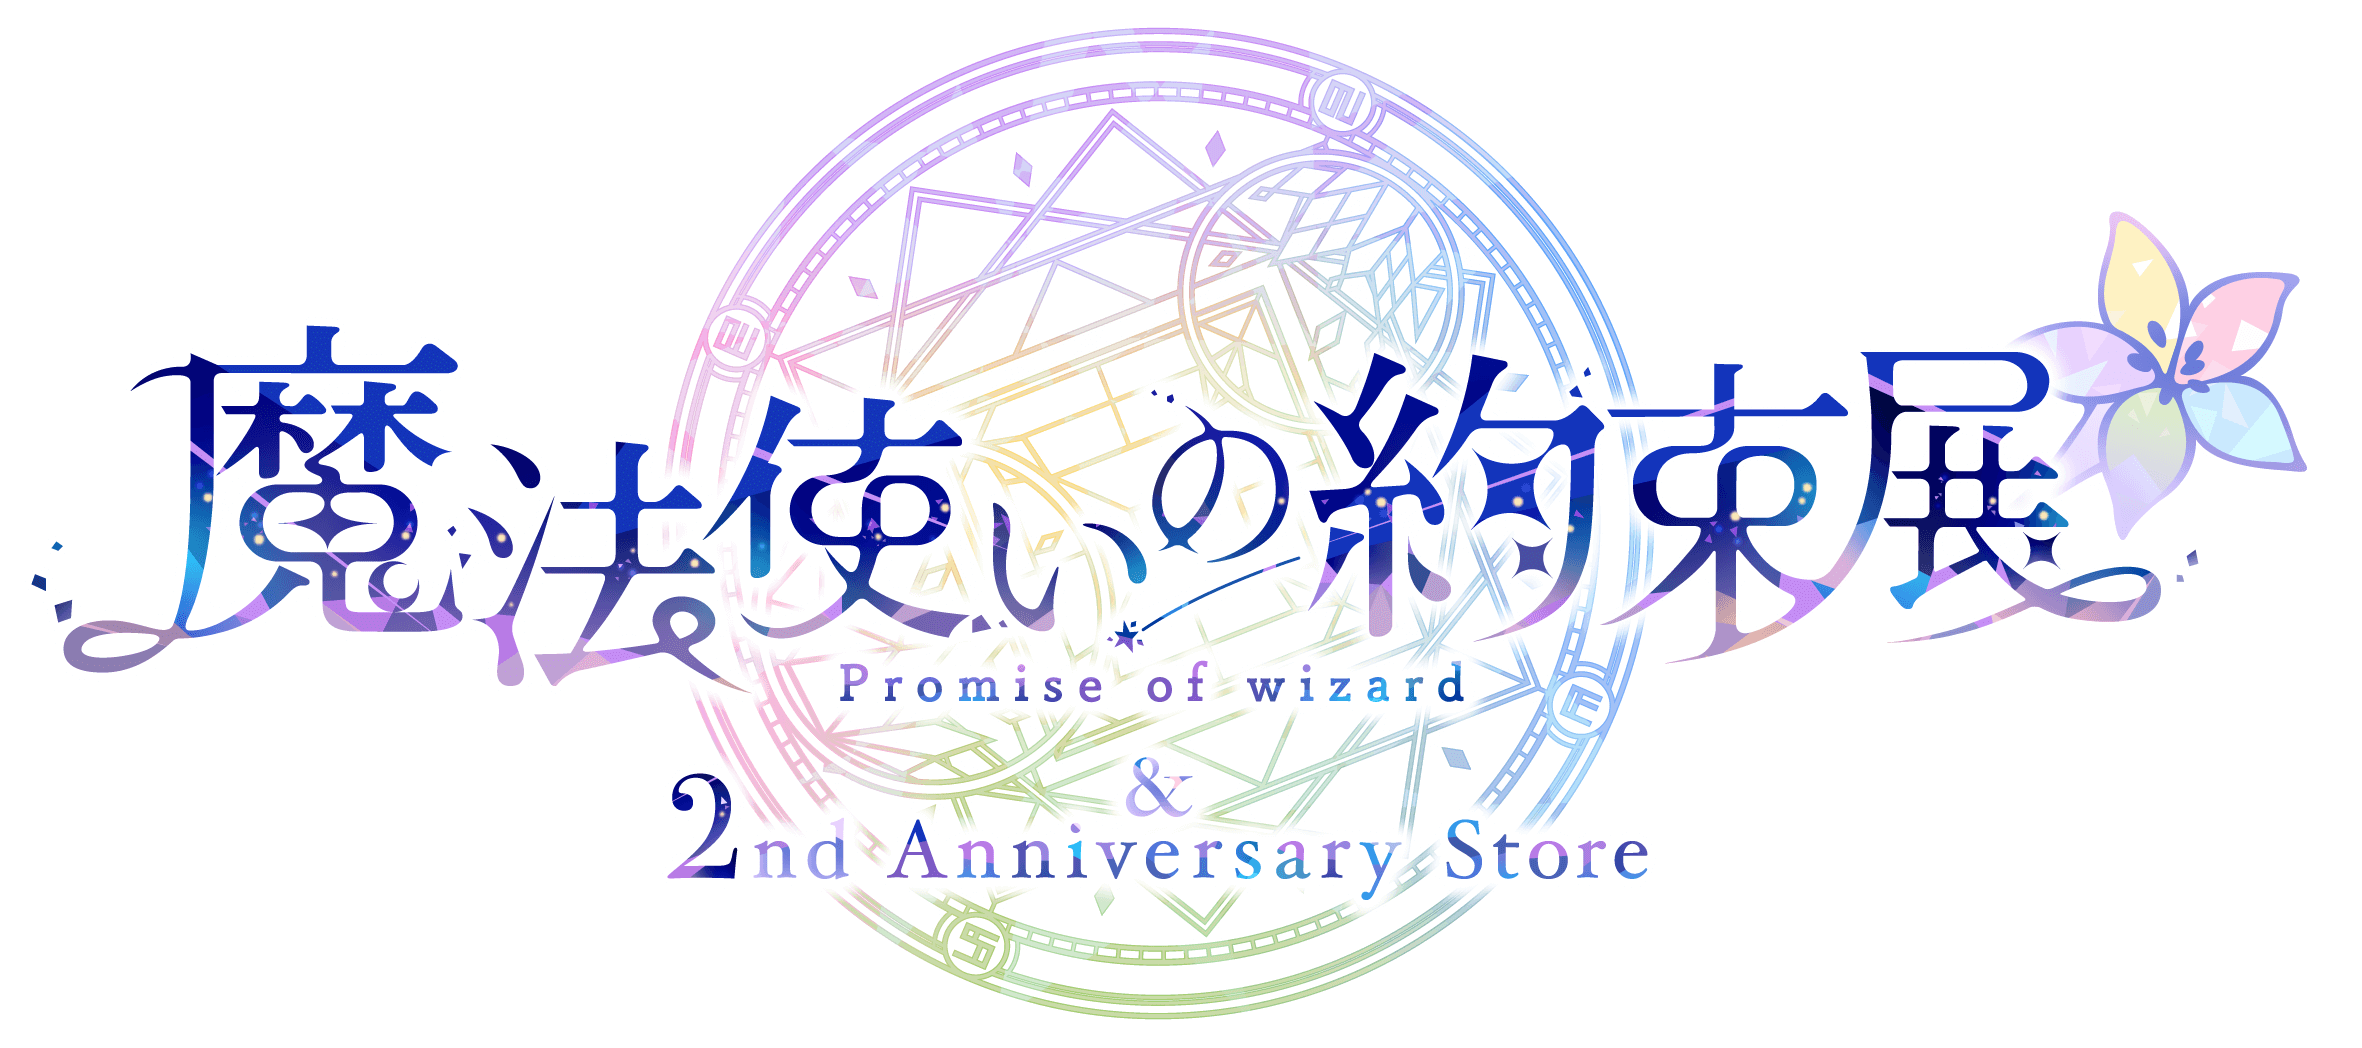 魔法使いの約束展&2nd Anniversary Store